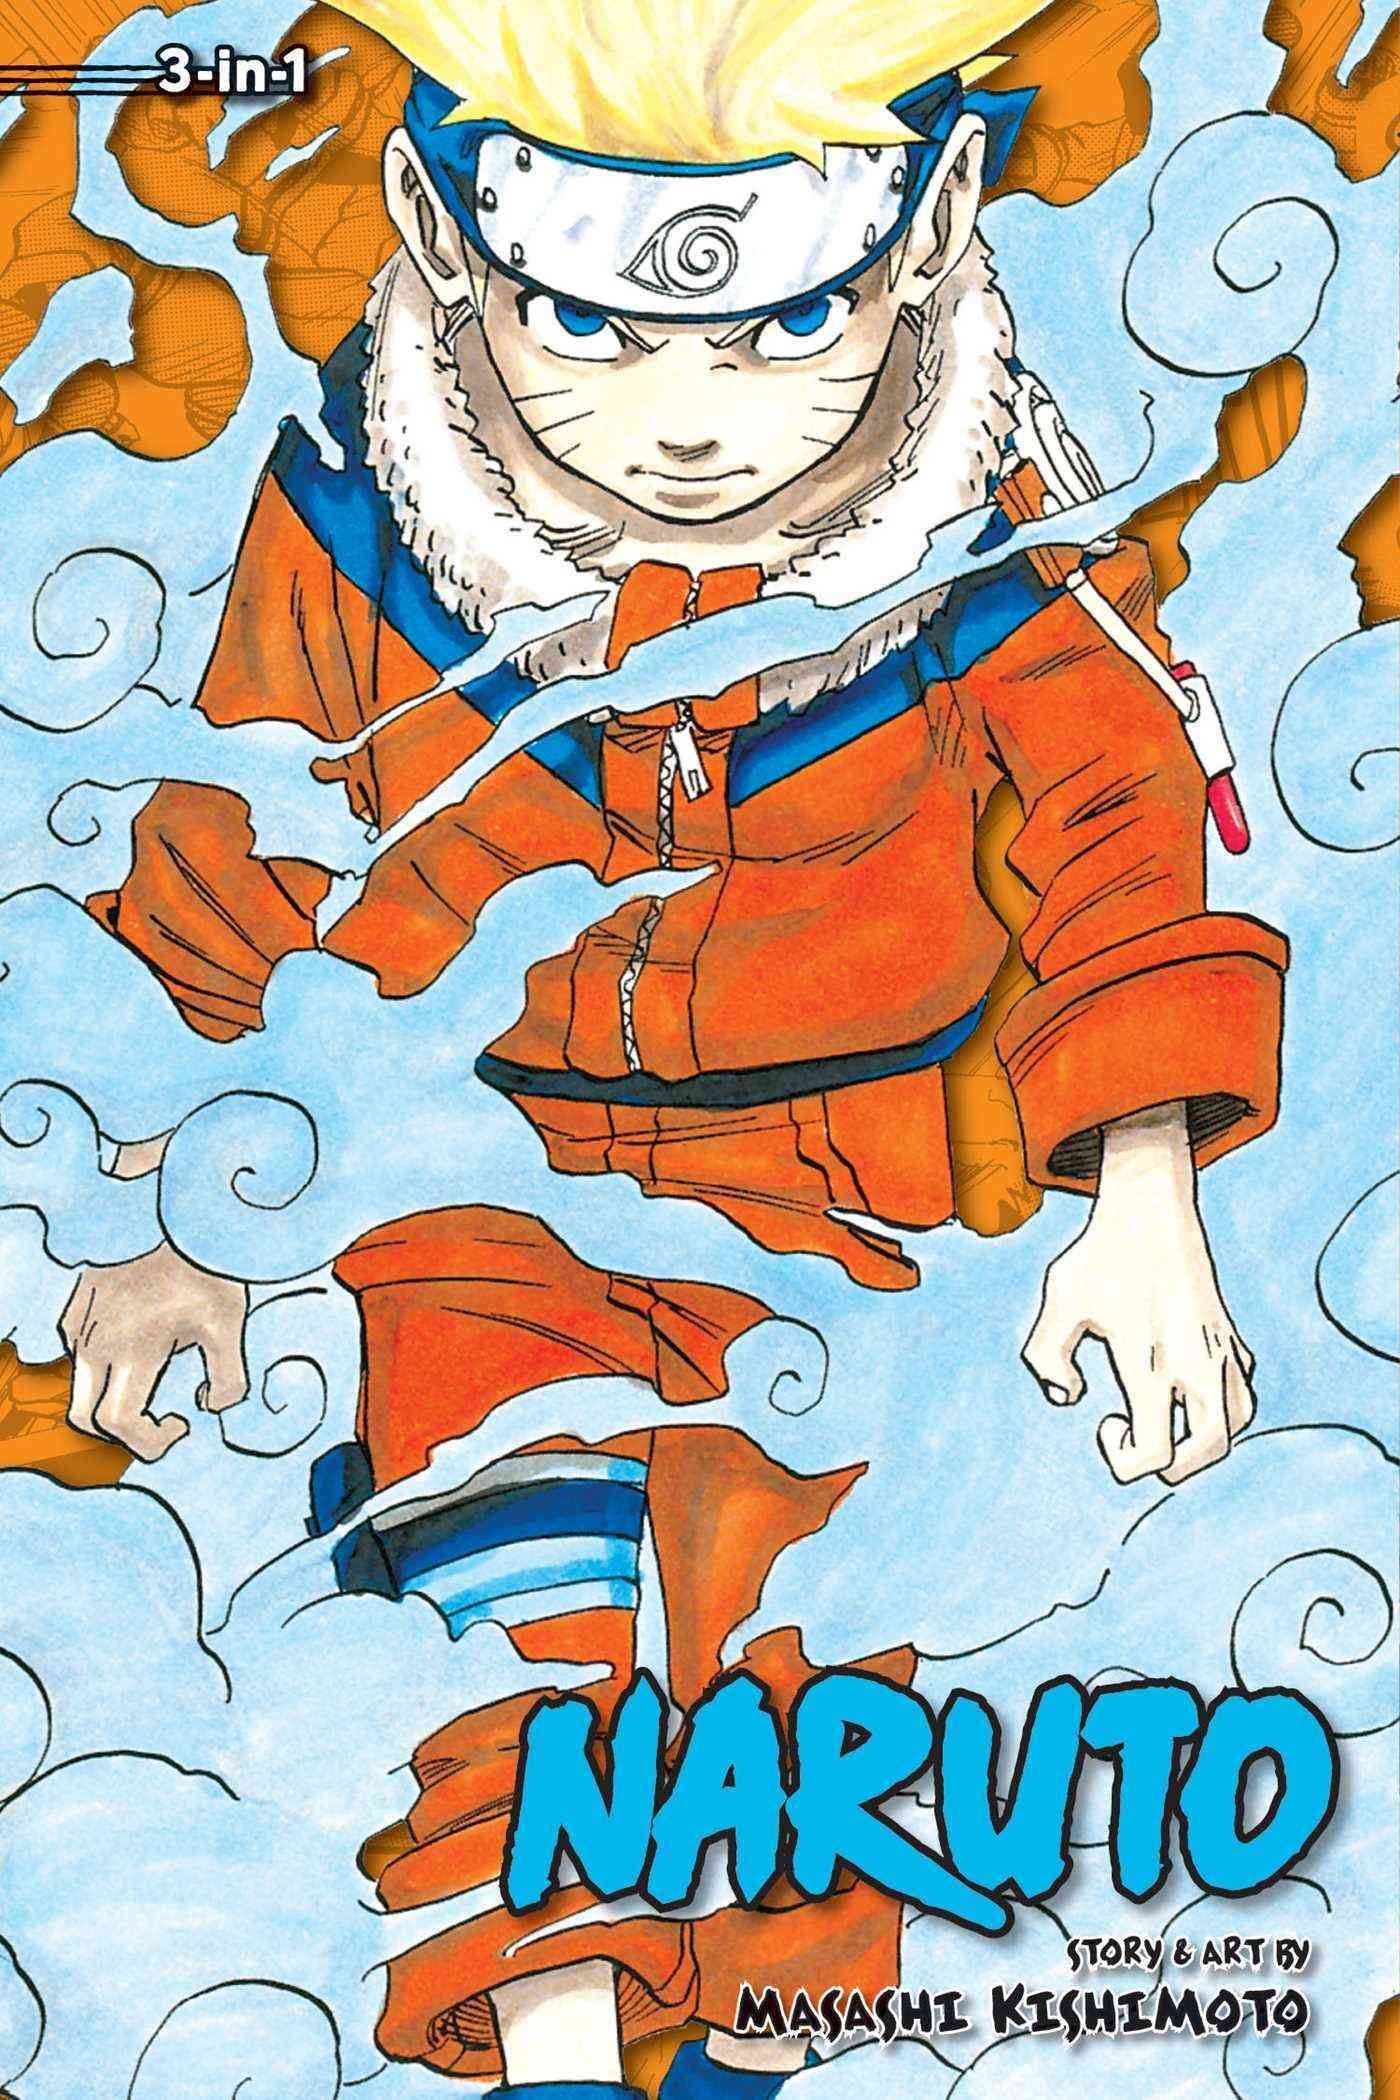 Naruto (3-in-1 Edition), Vol. 1 by Masashi Kishimoto (Paperback)